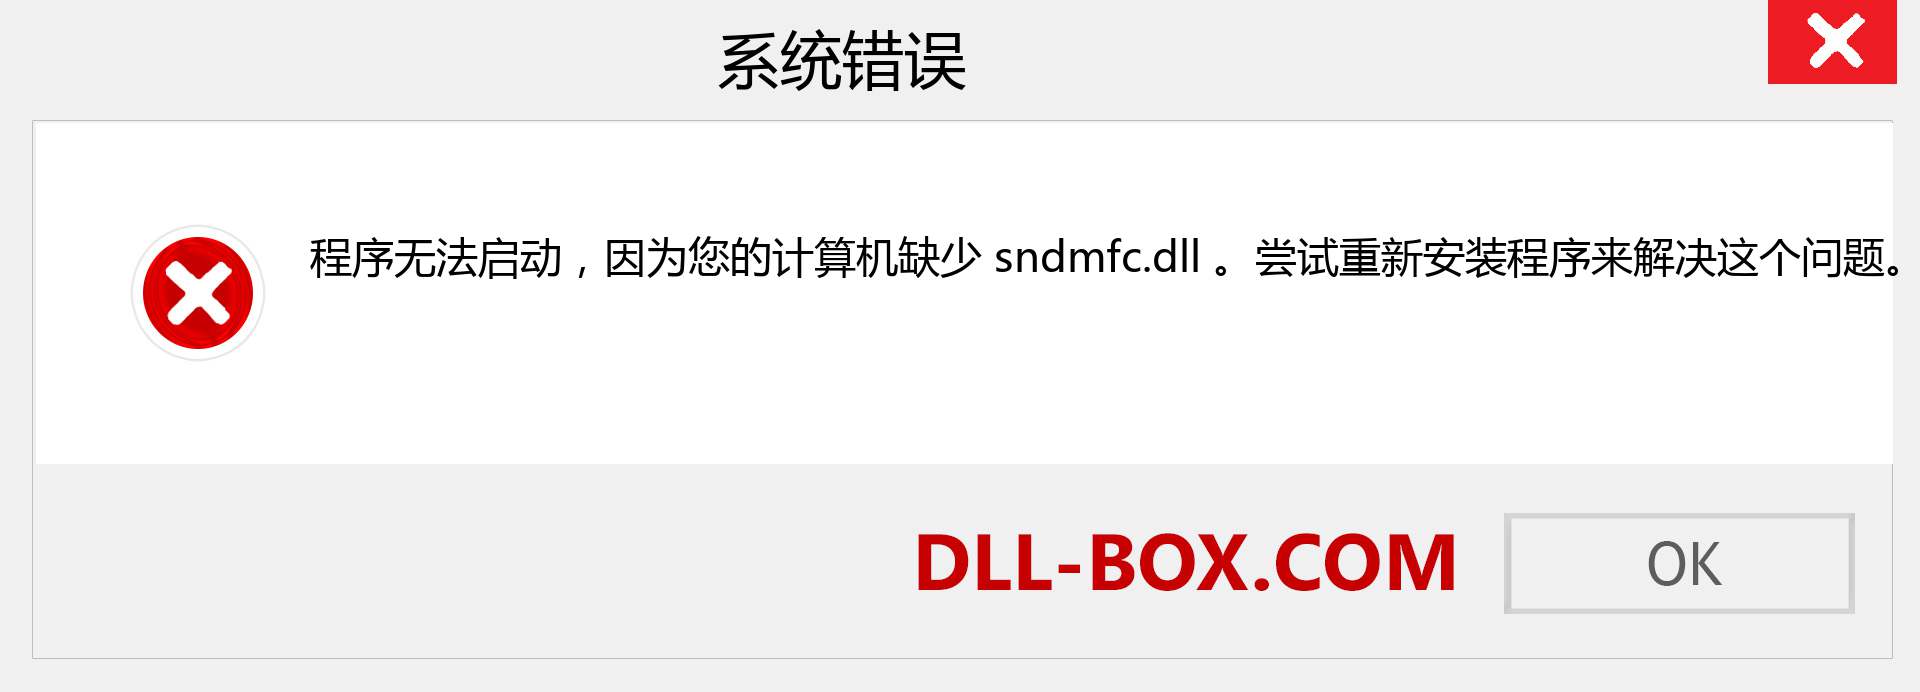 sndmfc.dll 文件丢失？。 适用于 Windows 7、8、10 的下载 - 修复 Windows、照片、图像上的 sndmfc dll 丢失错误